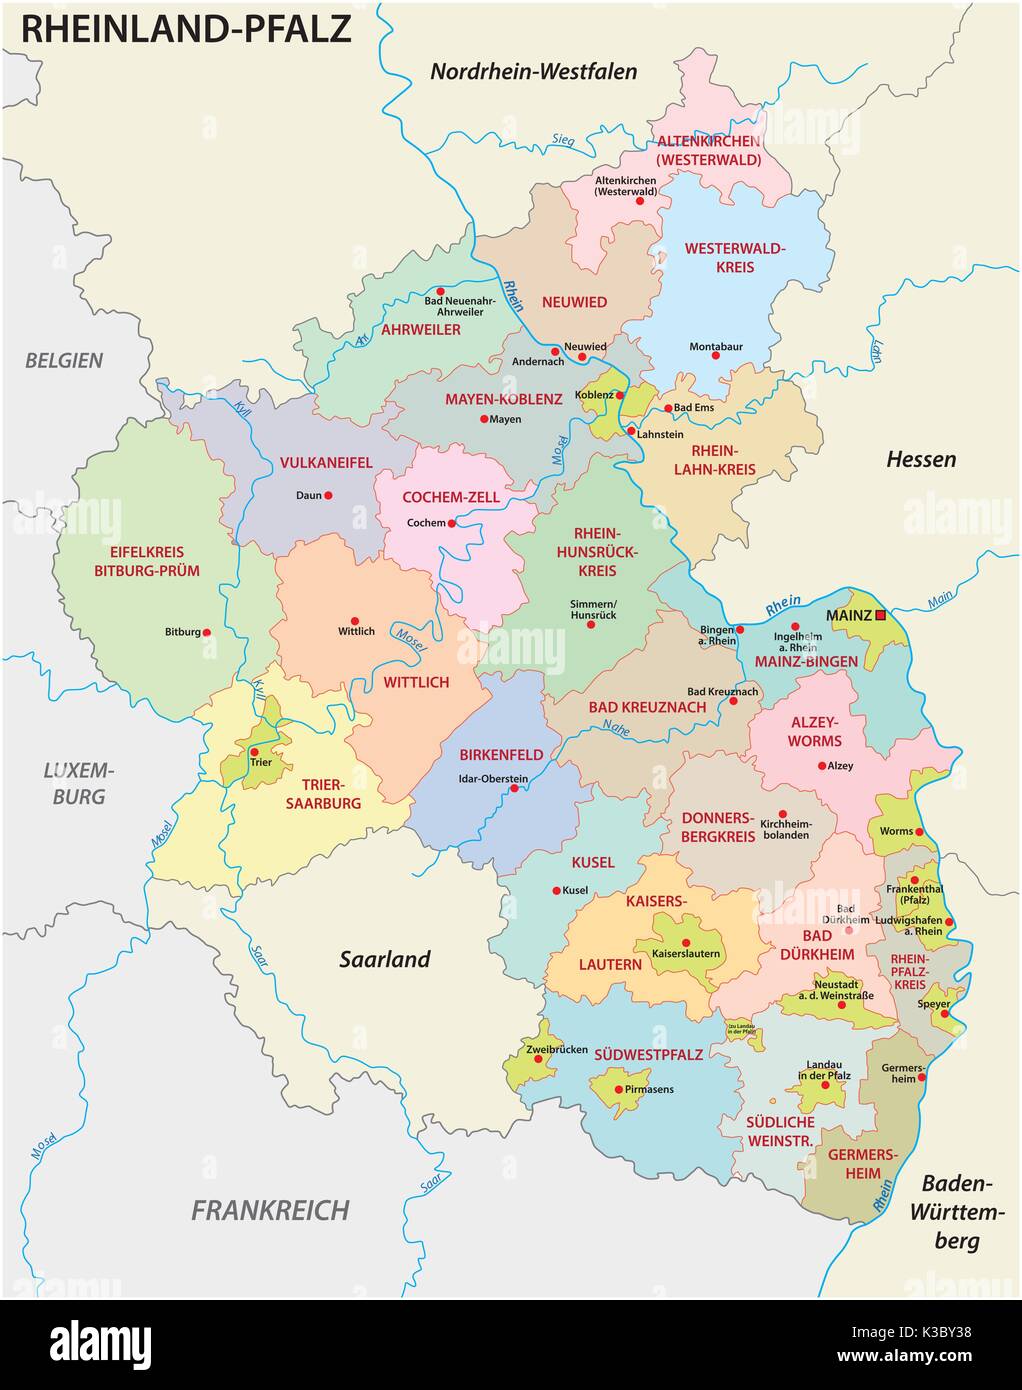 Renania-Palatinato politica e amministrativa di mappa in lingua tedesca Illustrazione Vettoriale